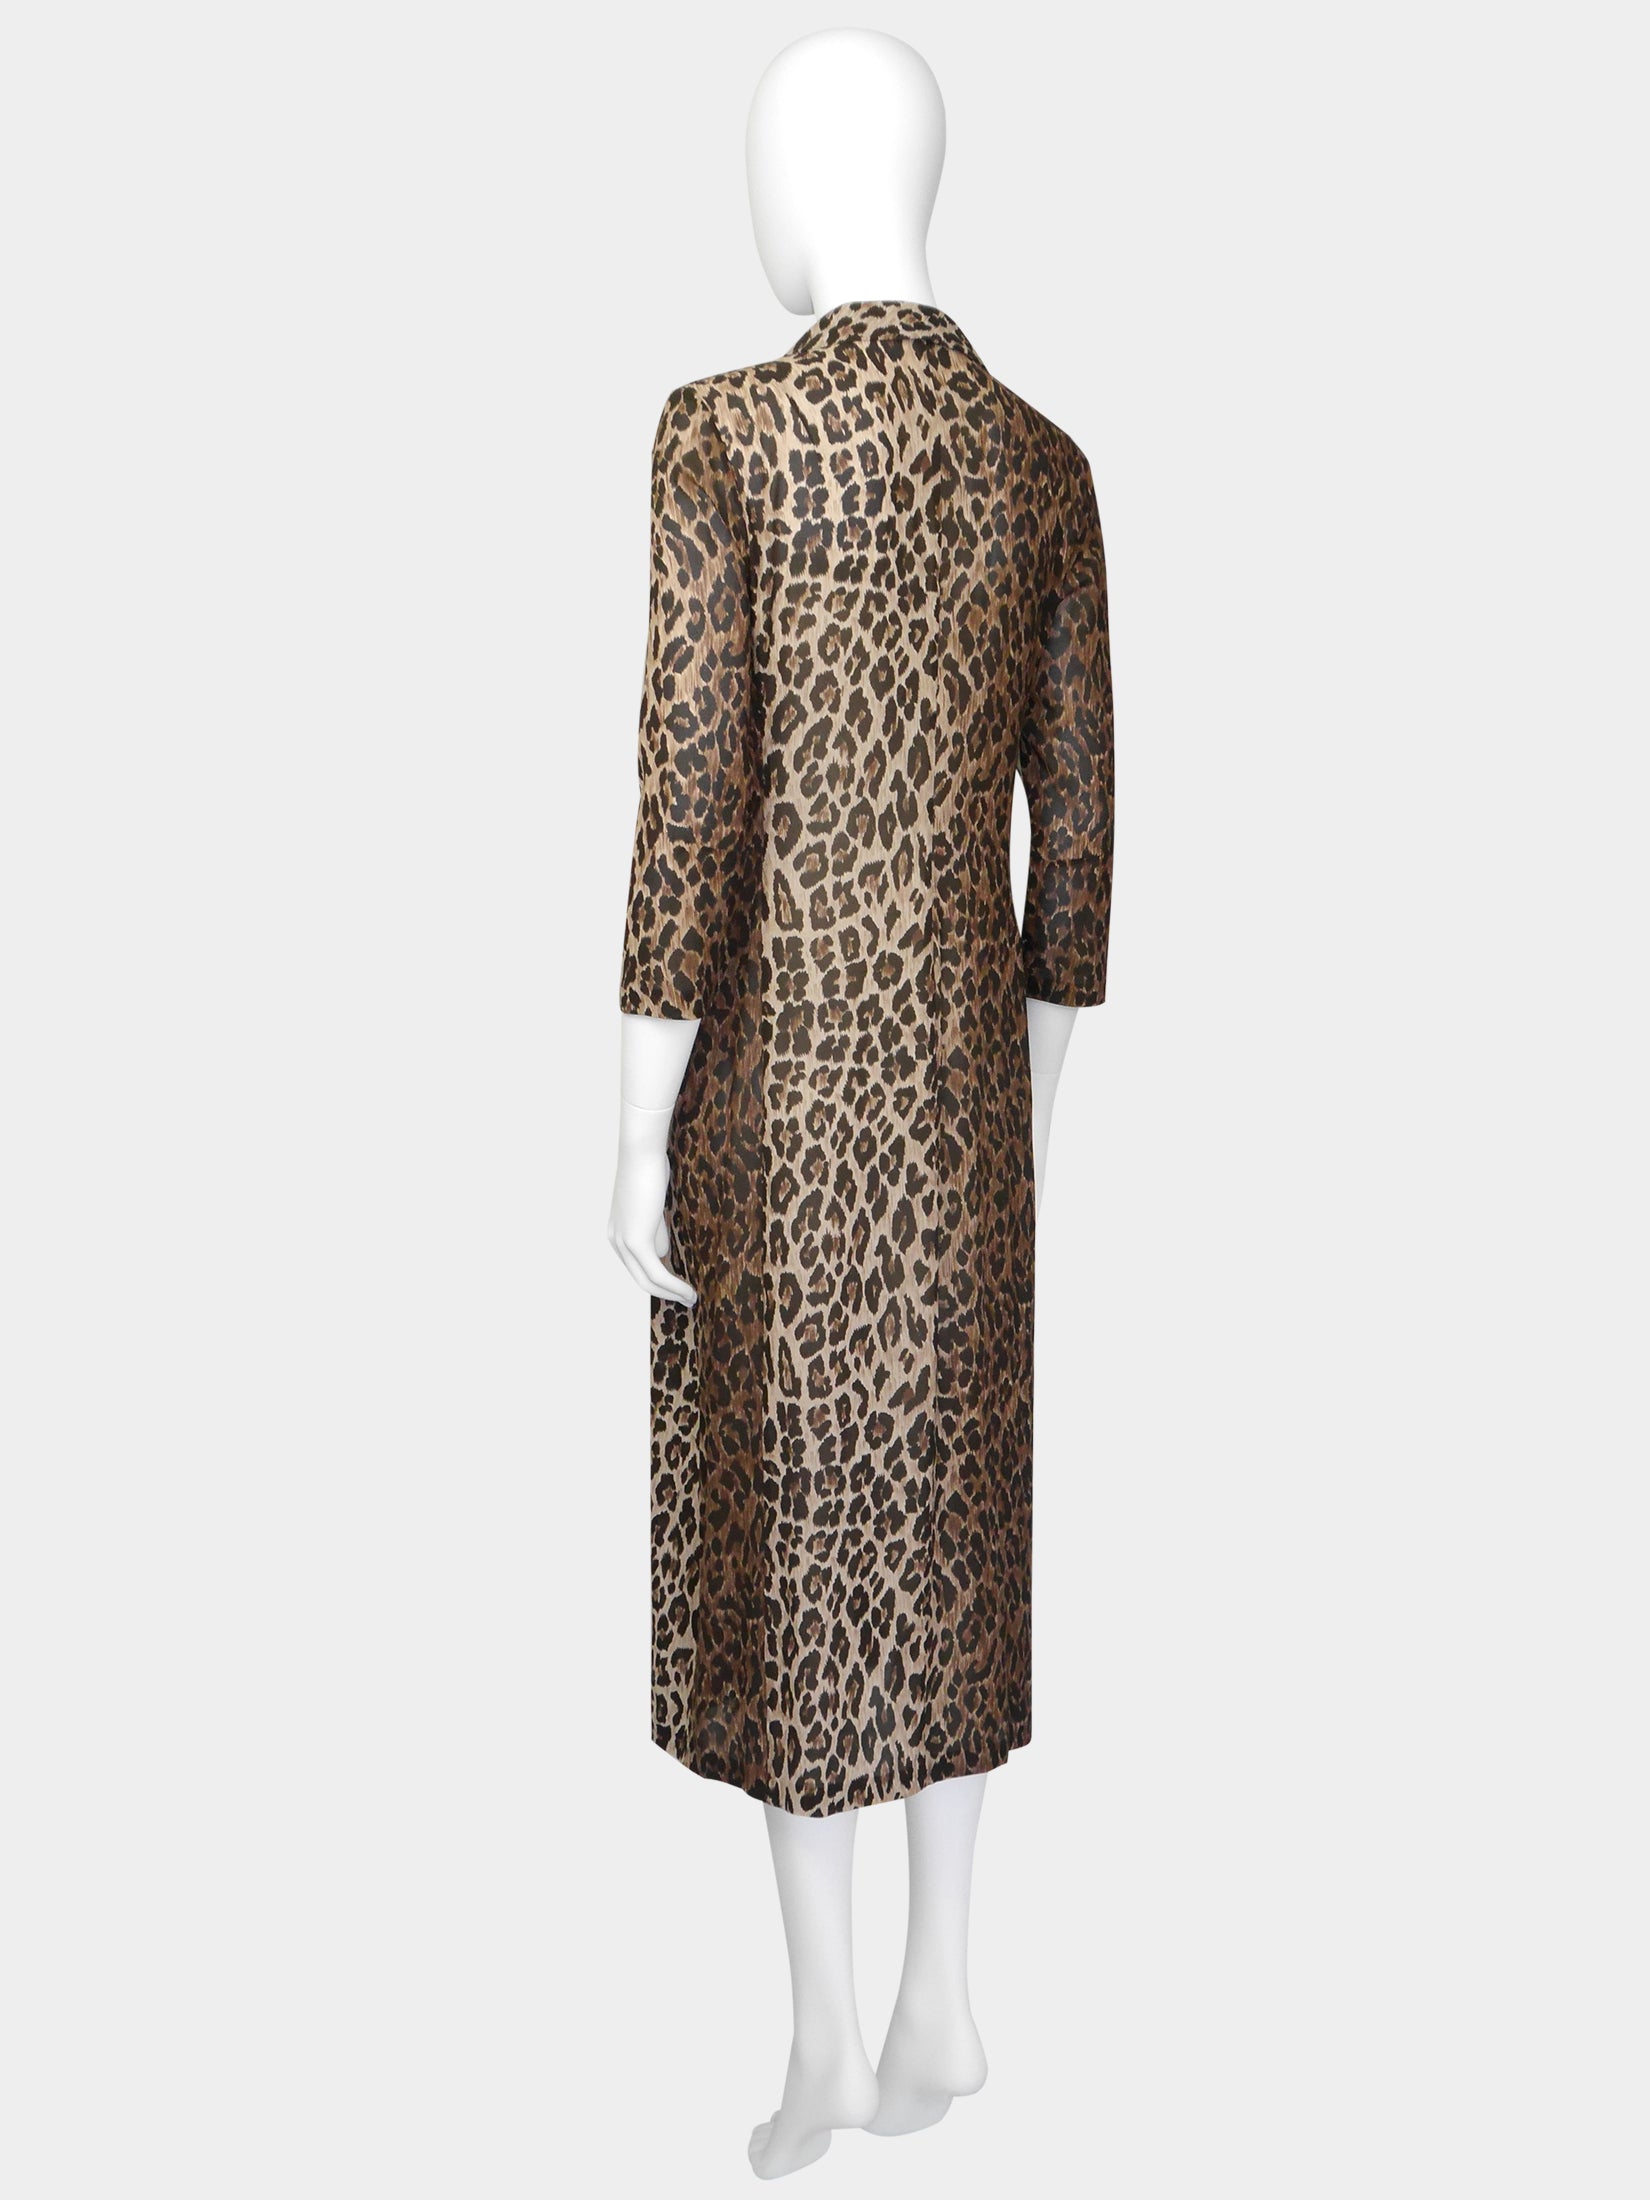 DOLCE & GABBANA Spring 1997 Vintage Leopard Print Silk Evening Coat Si –  VINTAGE VON WERTH